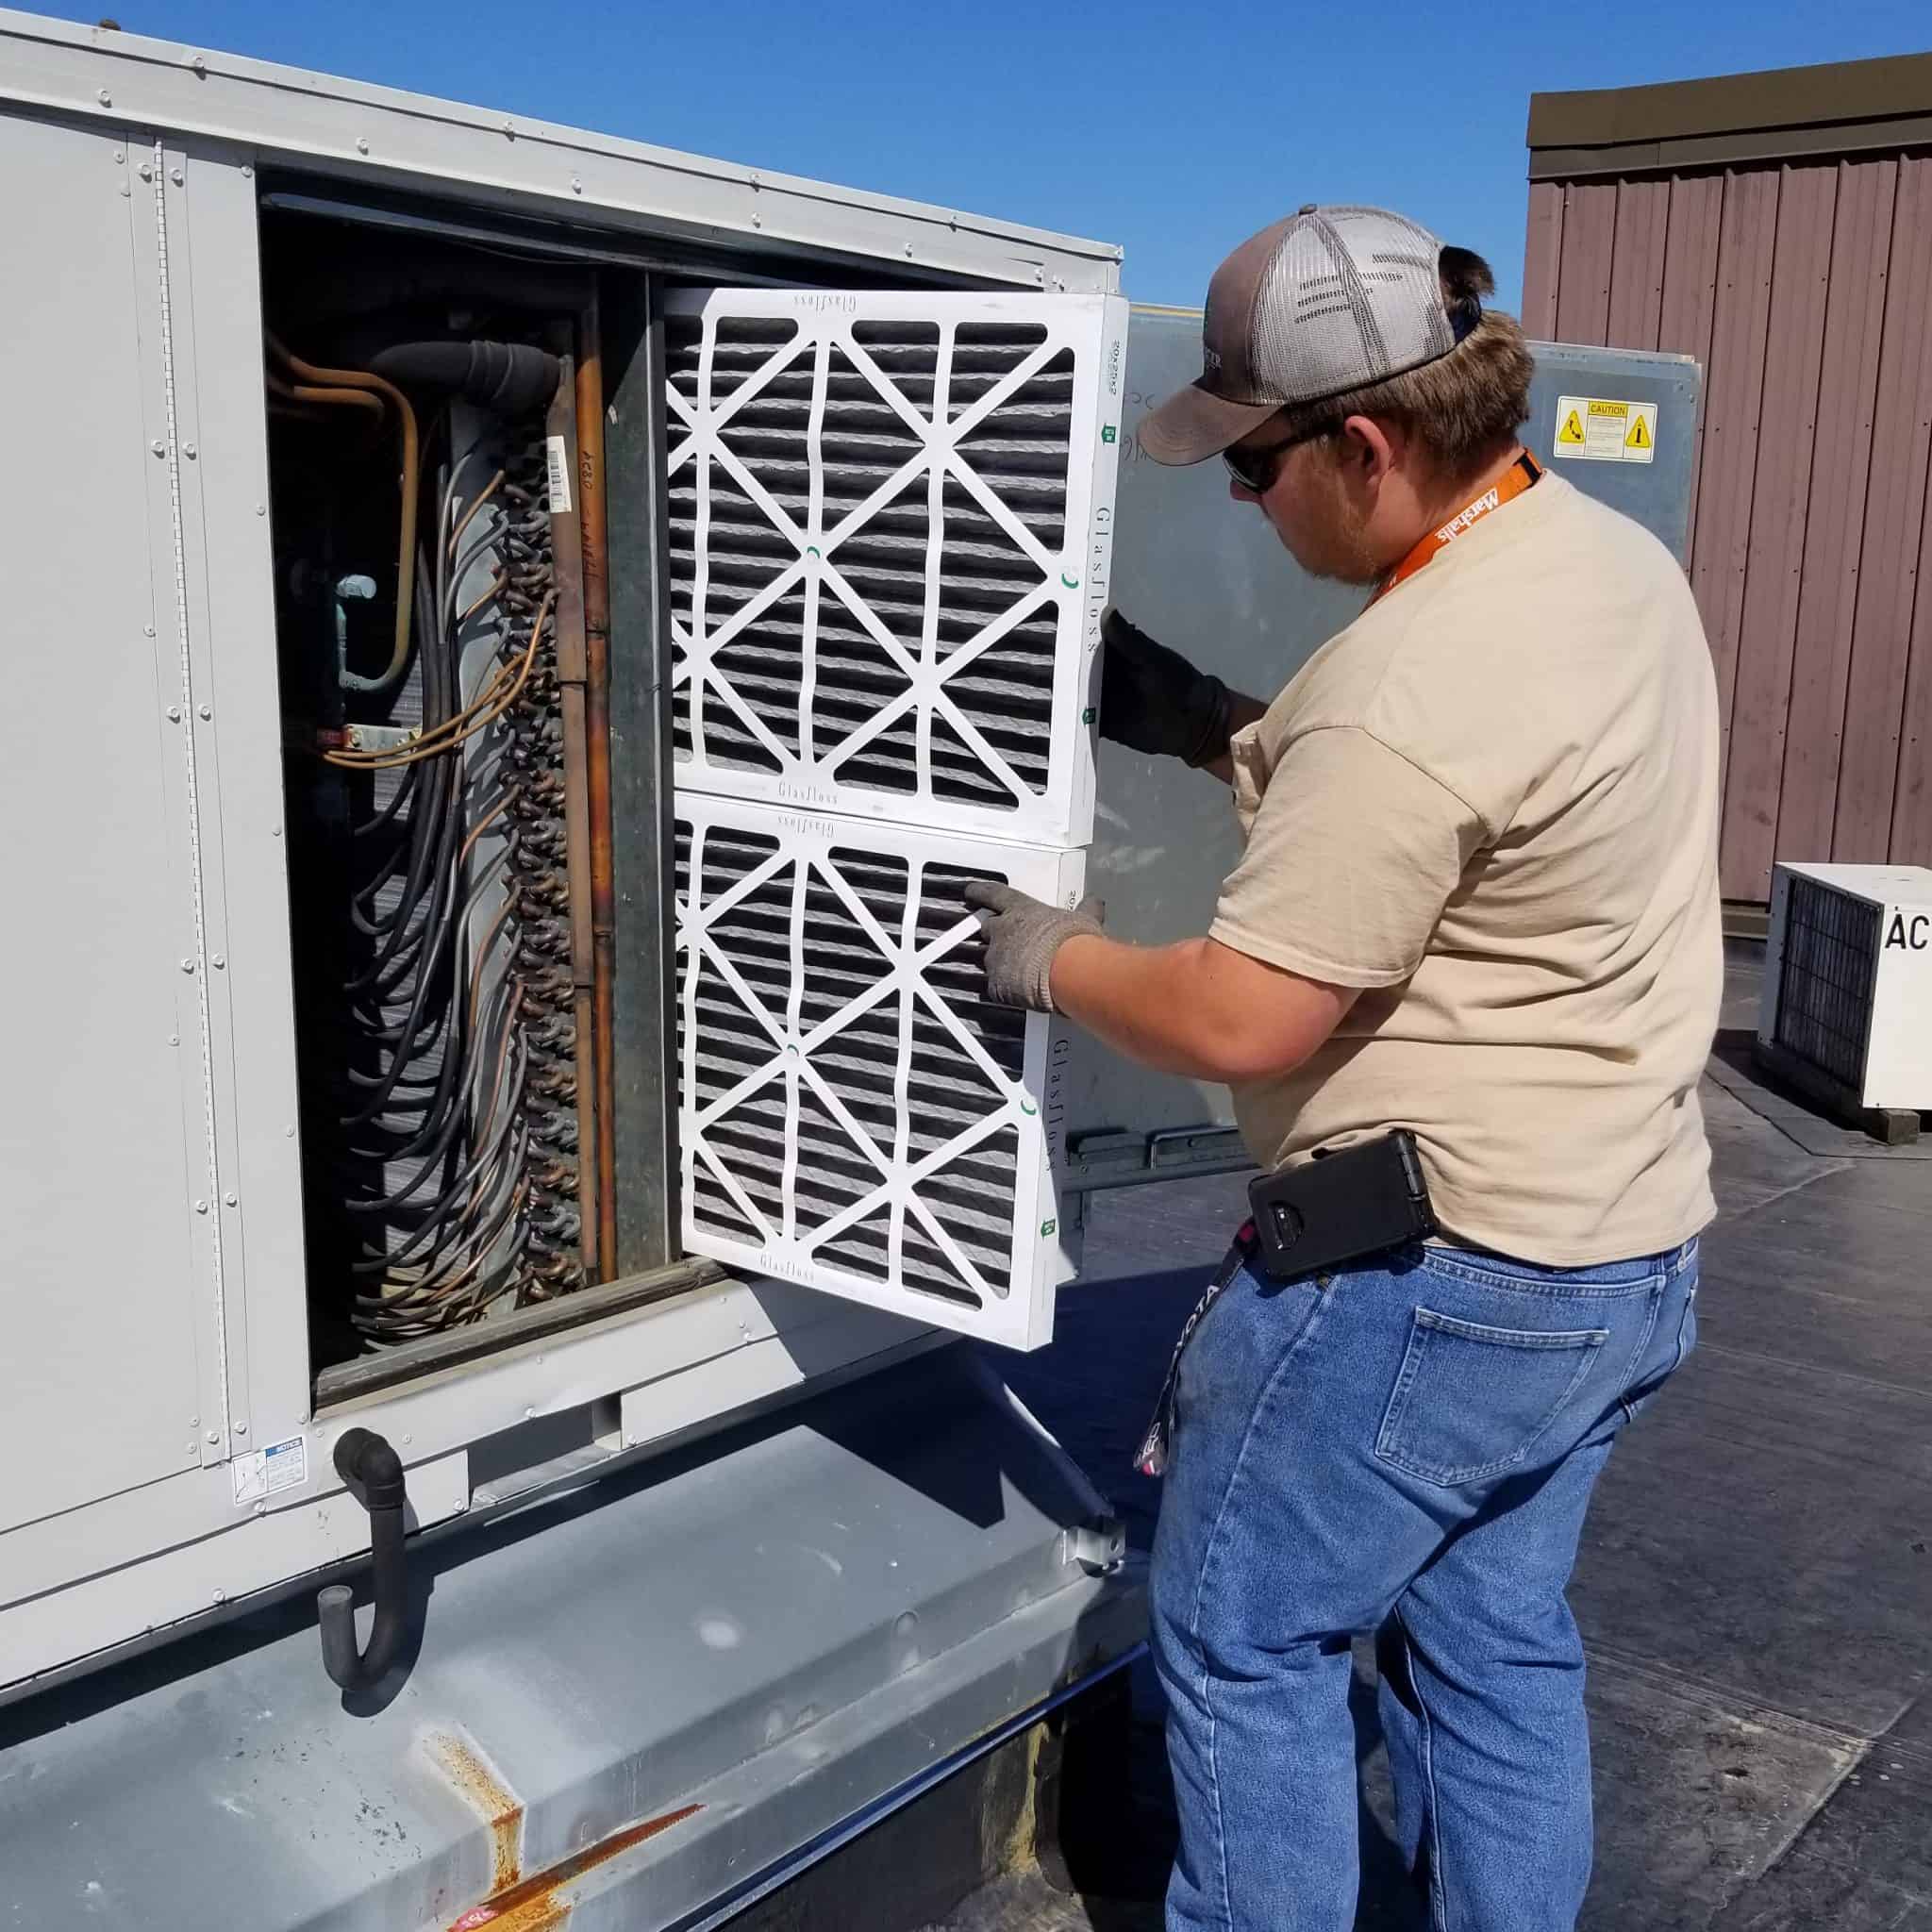 An HVAC technician replacing an air filter in an HVAC unit.